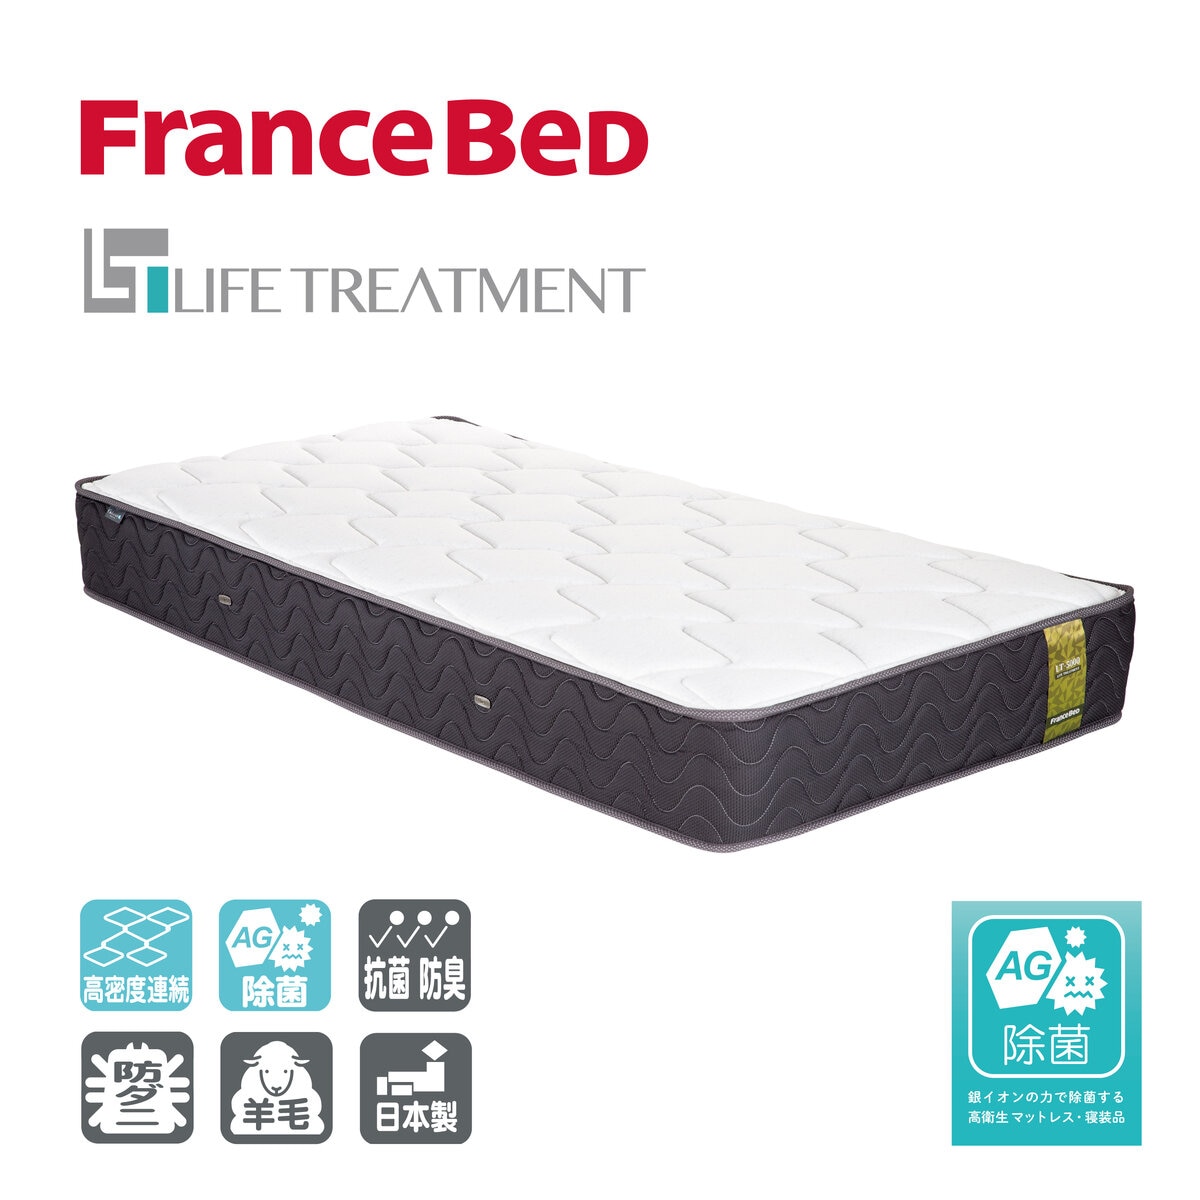 フランスベッド ベッドセット ダブル ディマンシュ01